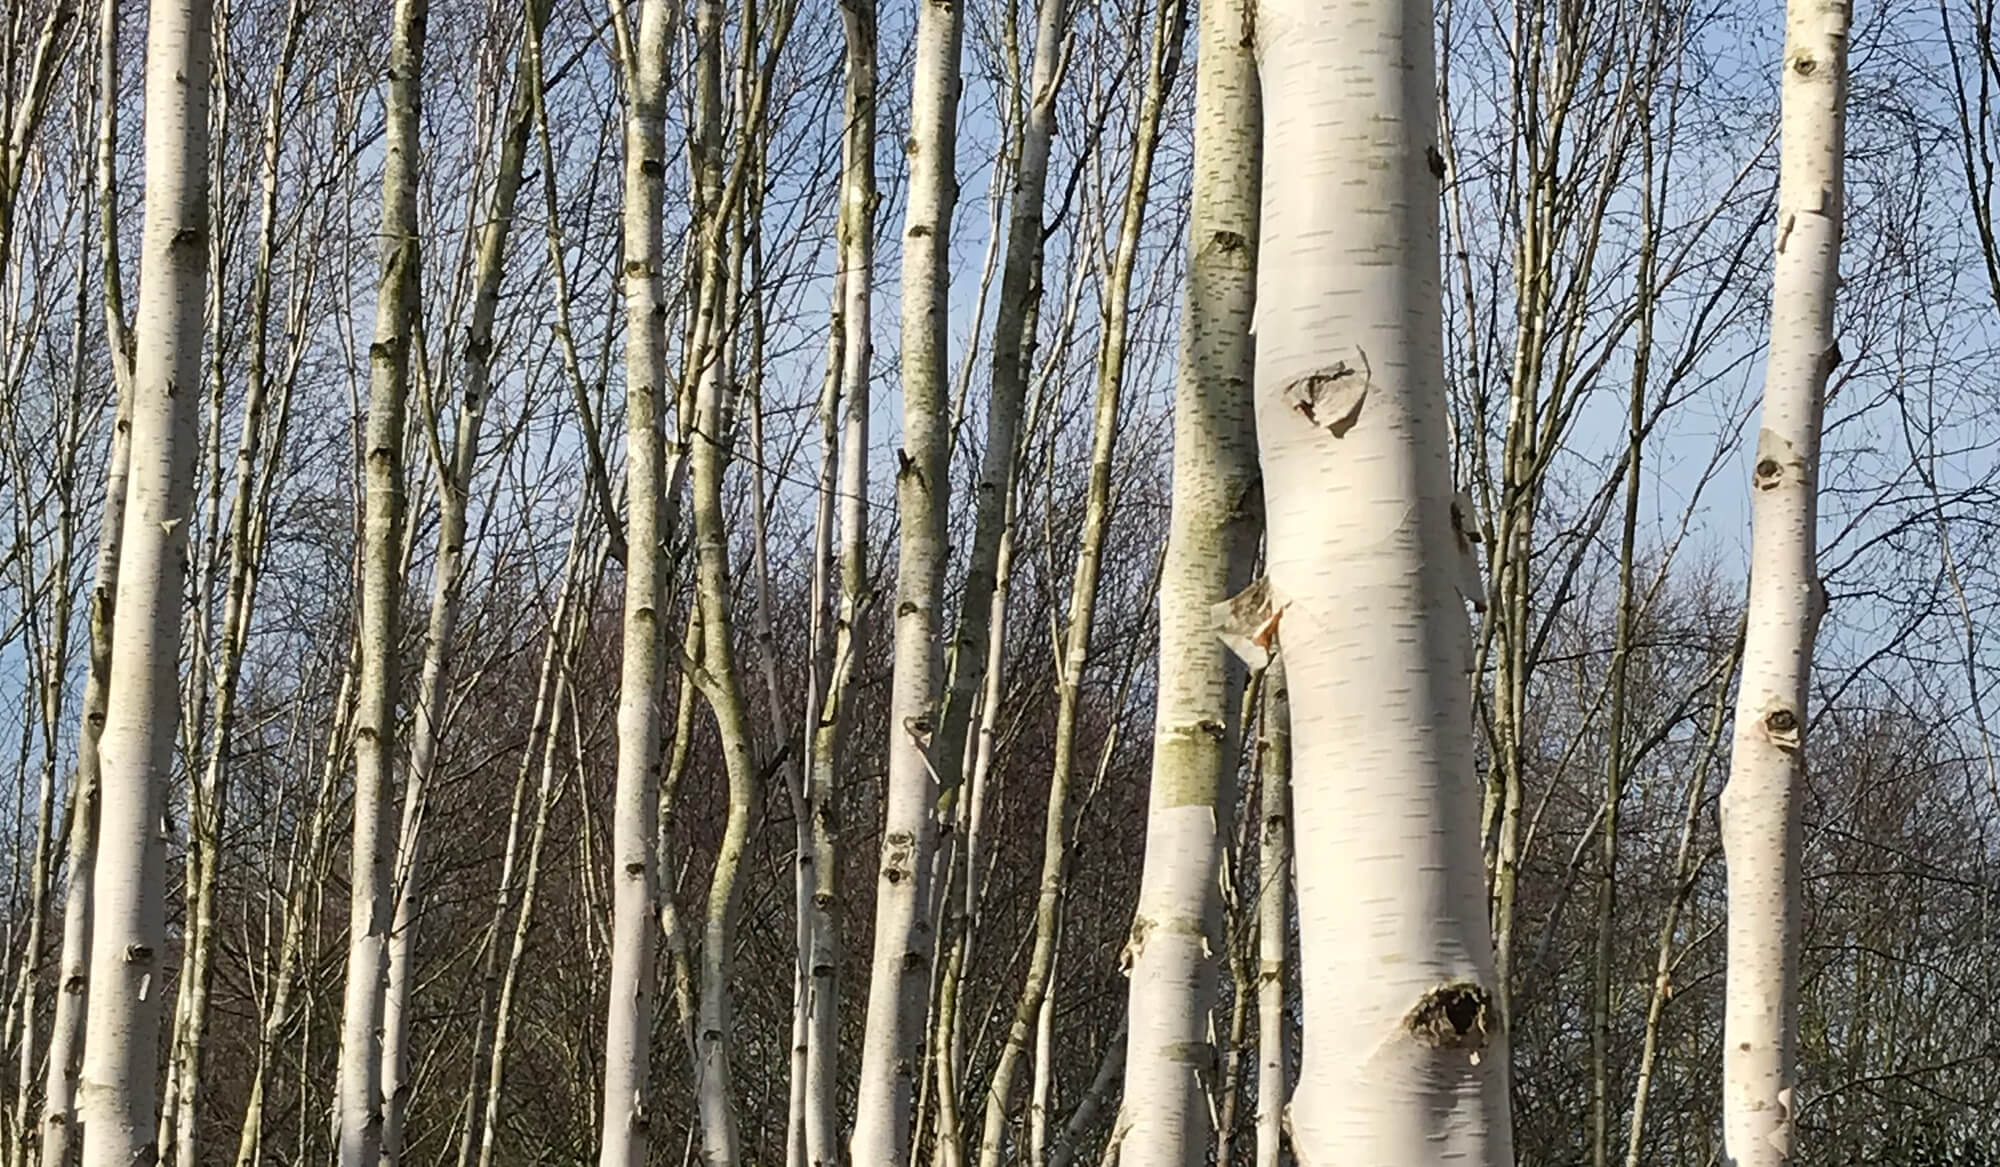 Return to Birches